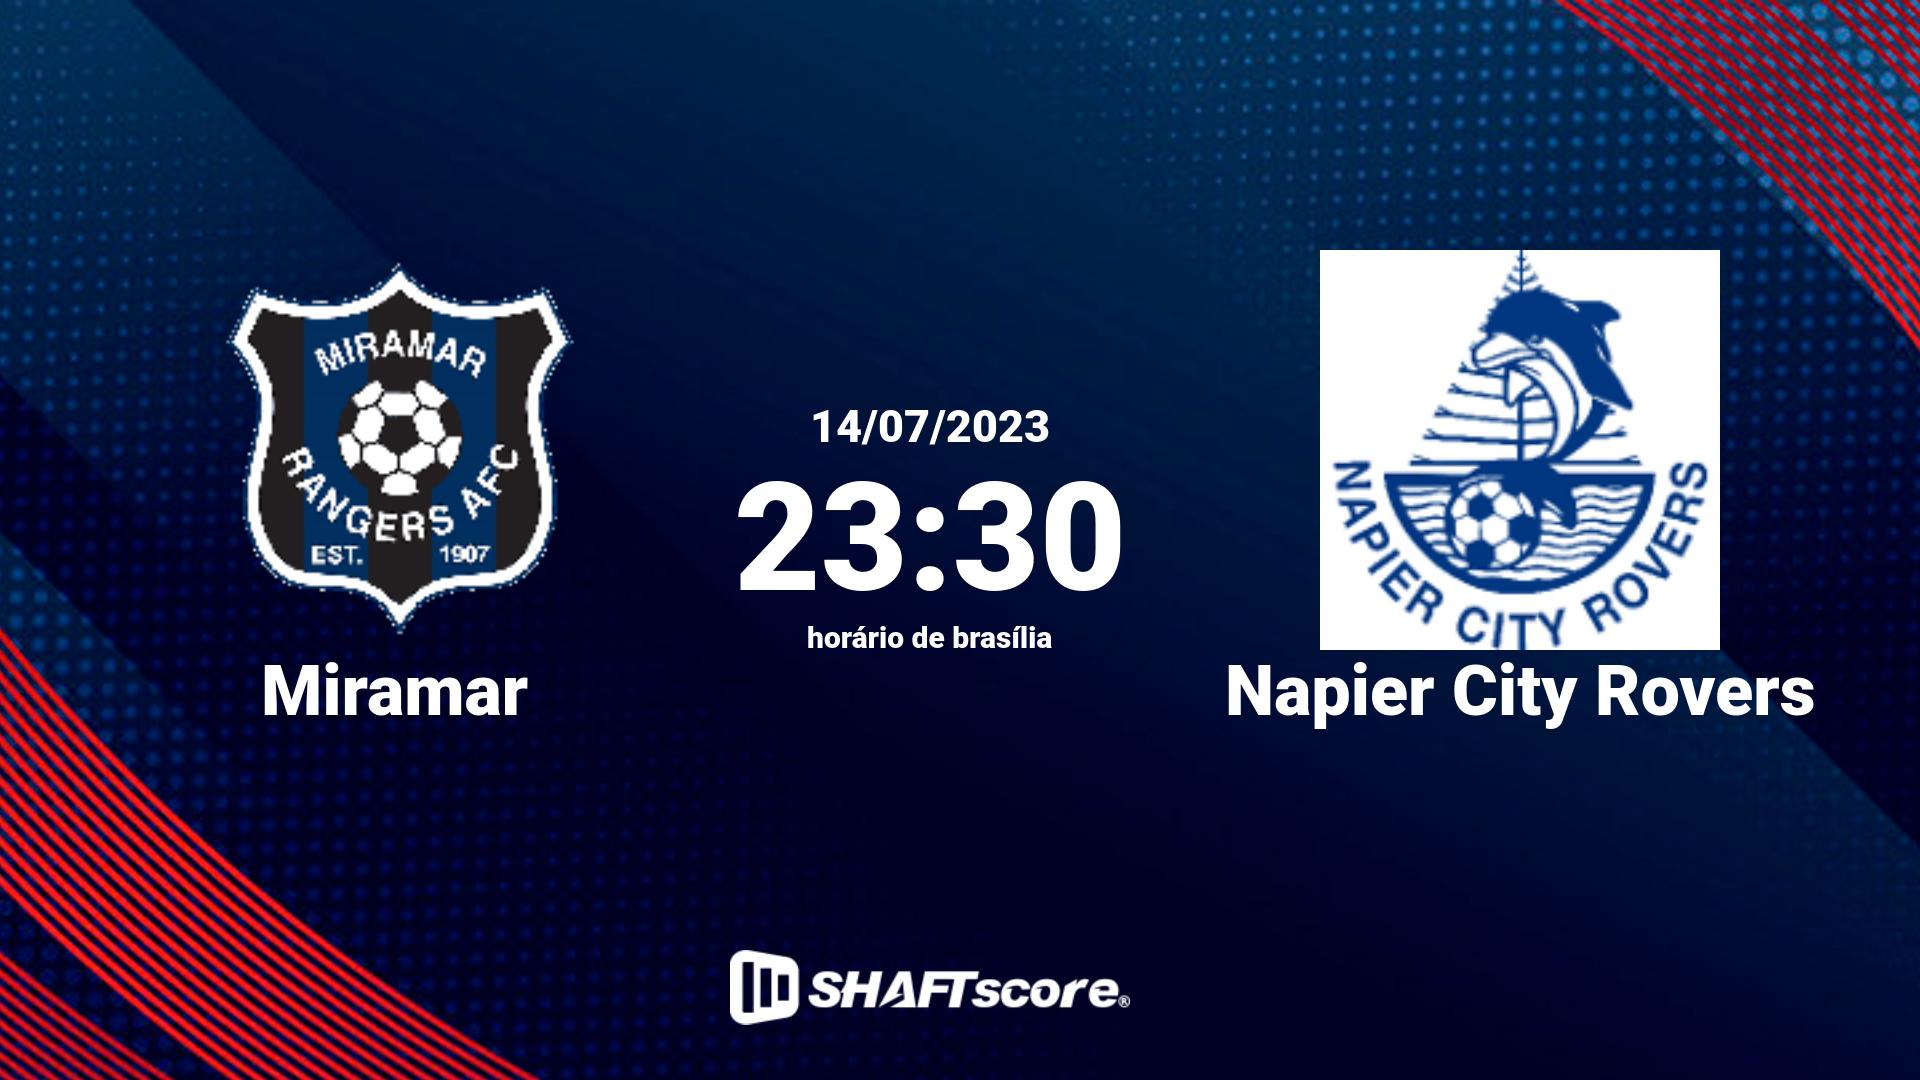 Estatísticas do jogo Miramar vs Napier City Rovers 14.07 23:30